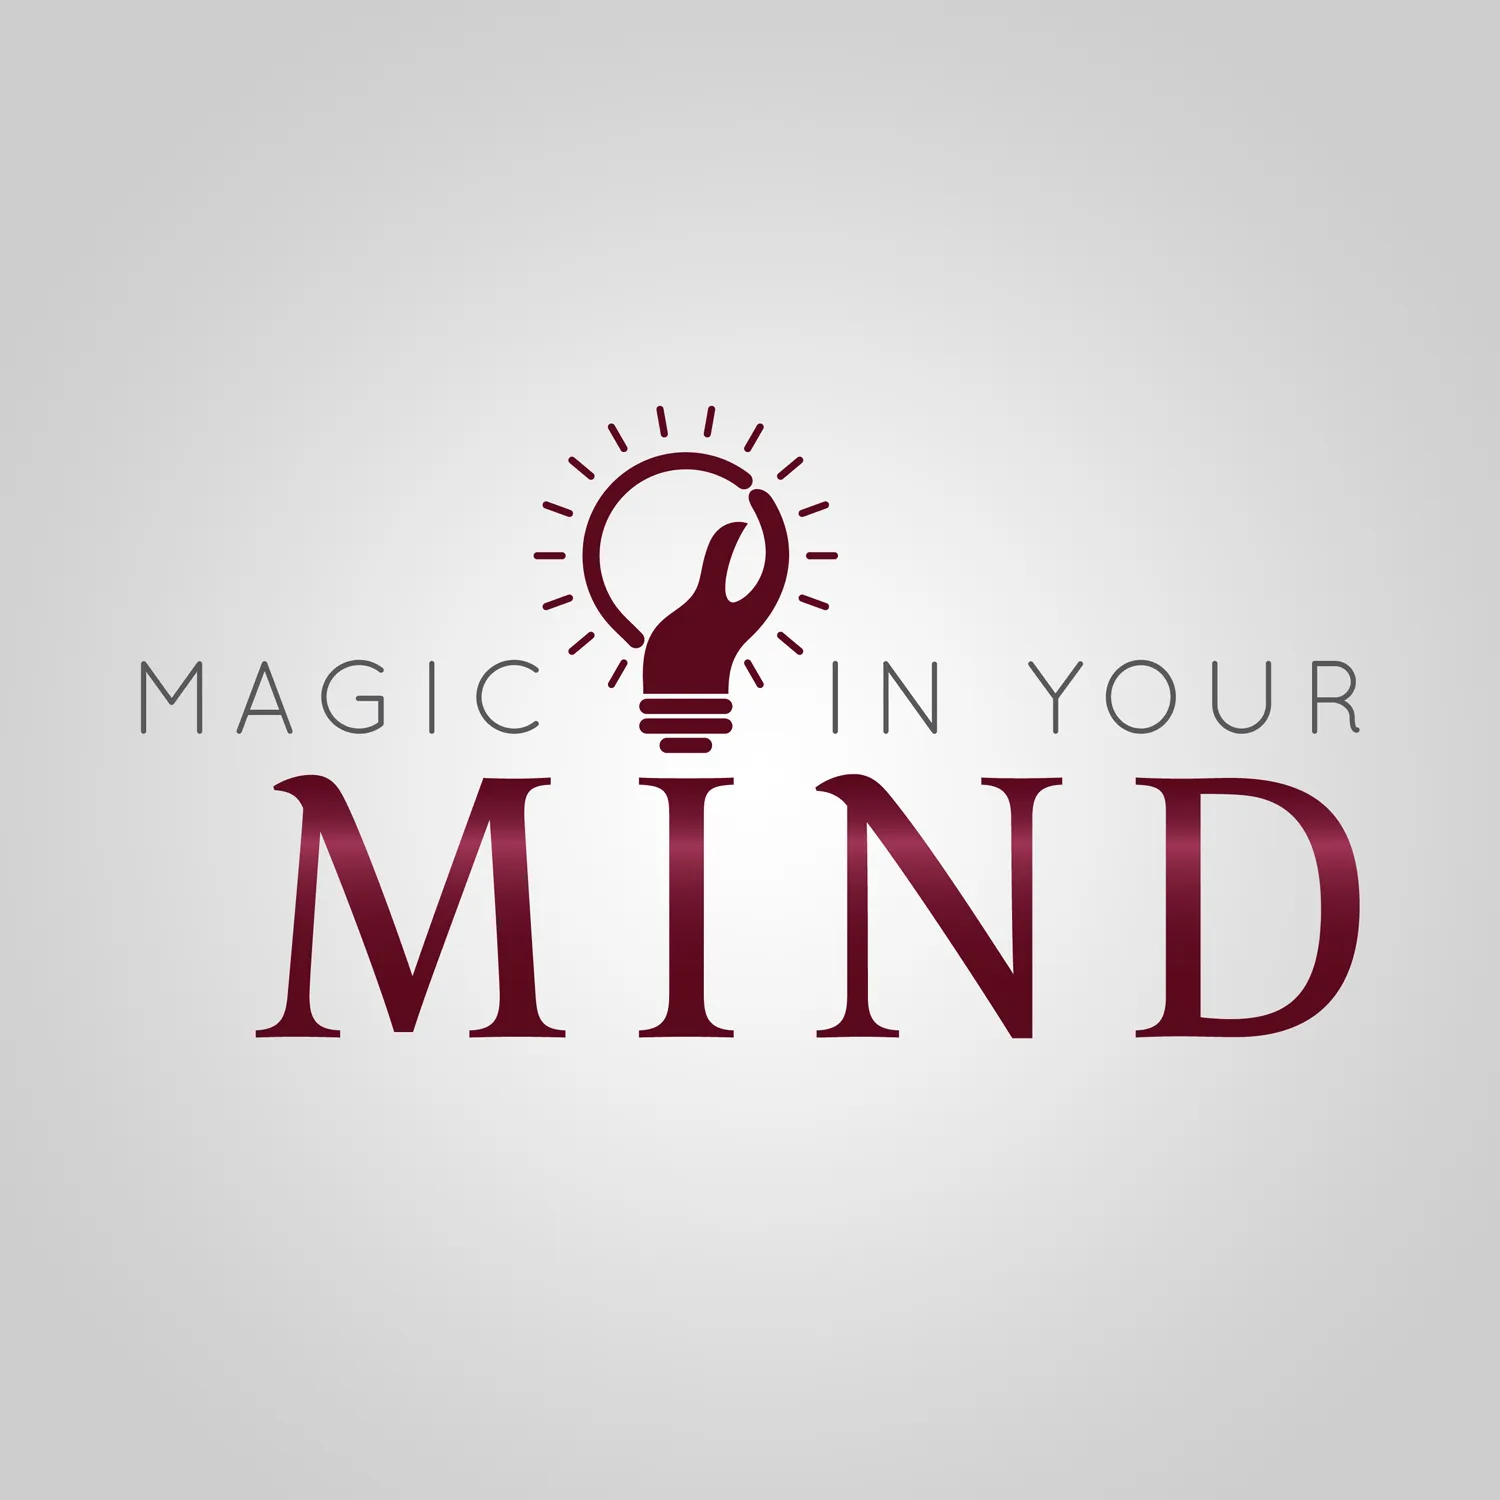 Magic in your Mind, Proctor Gallagher Institute